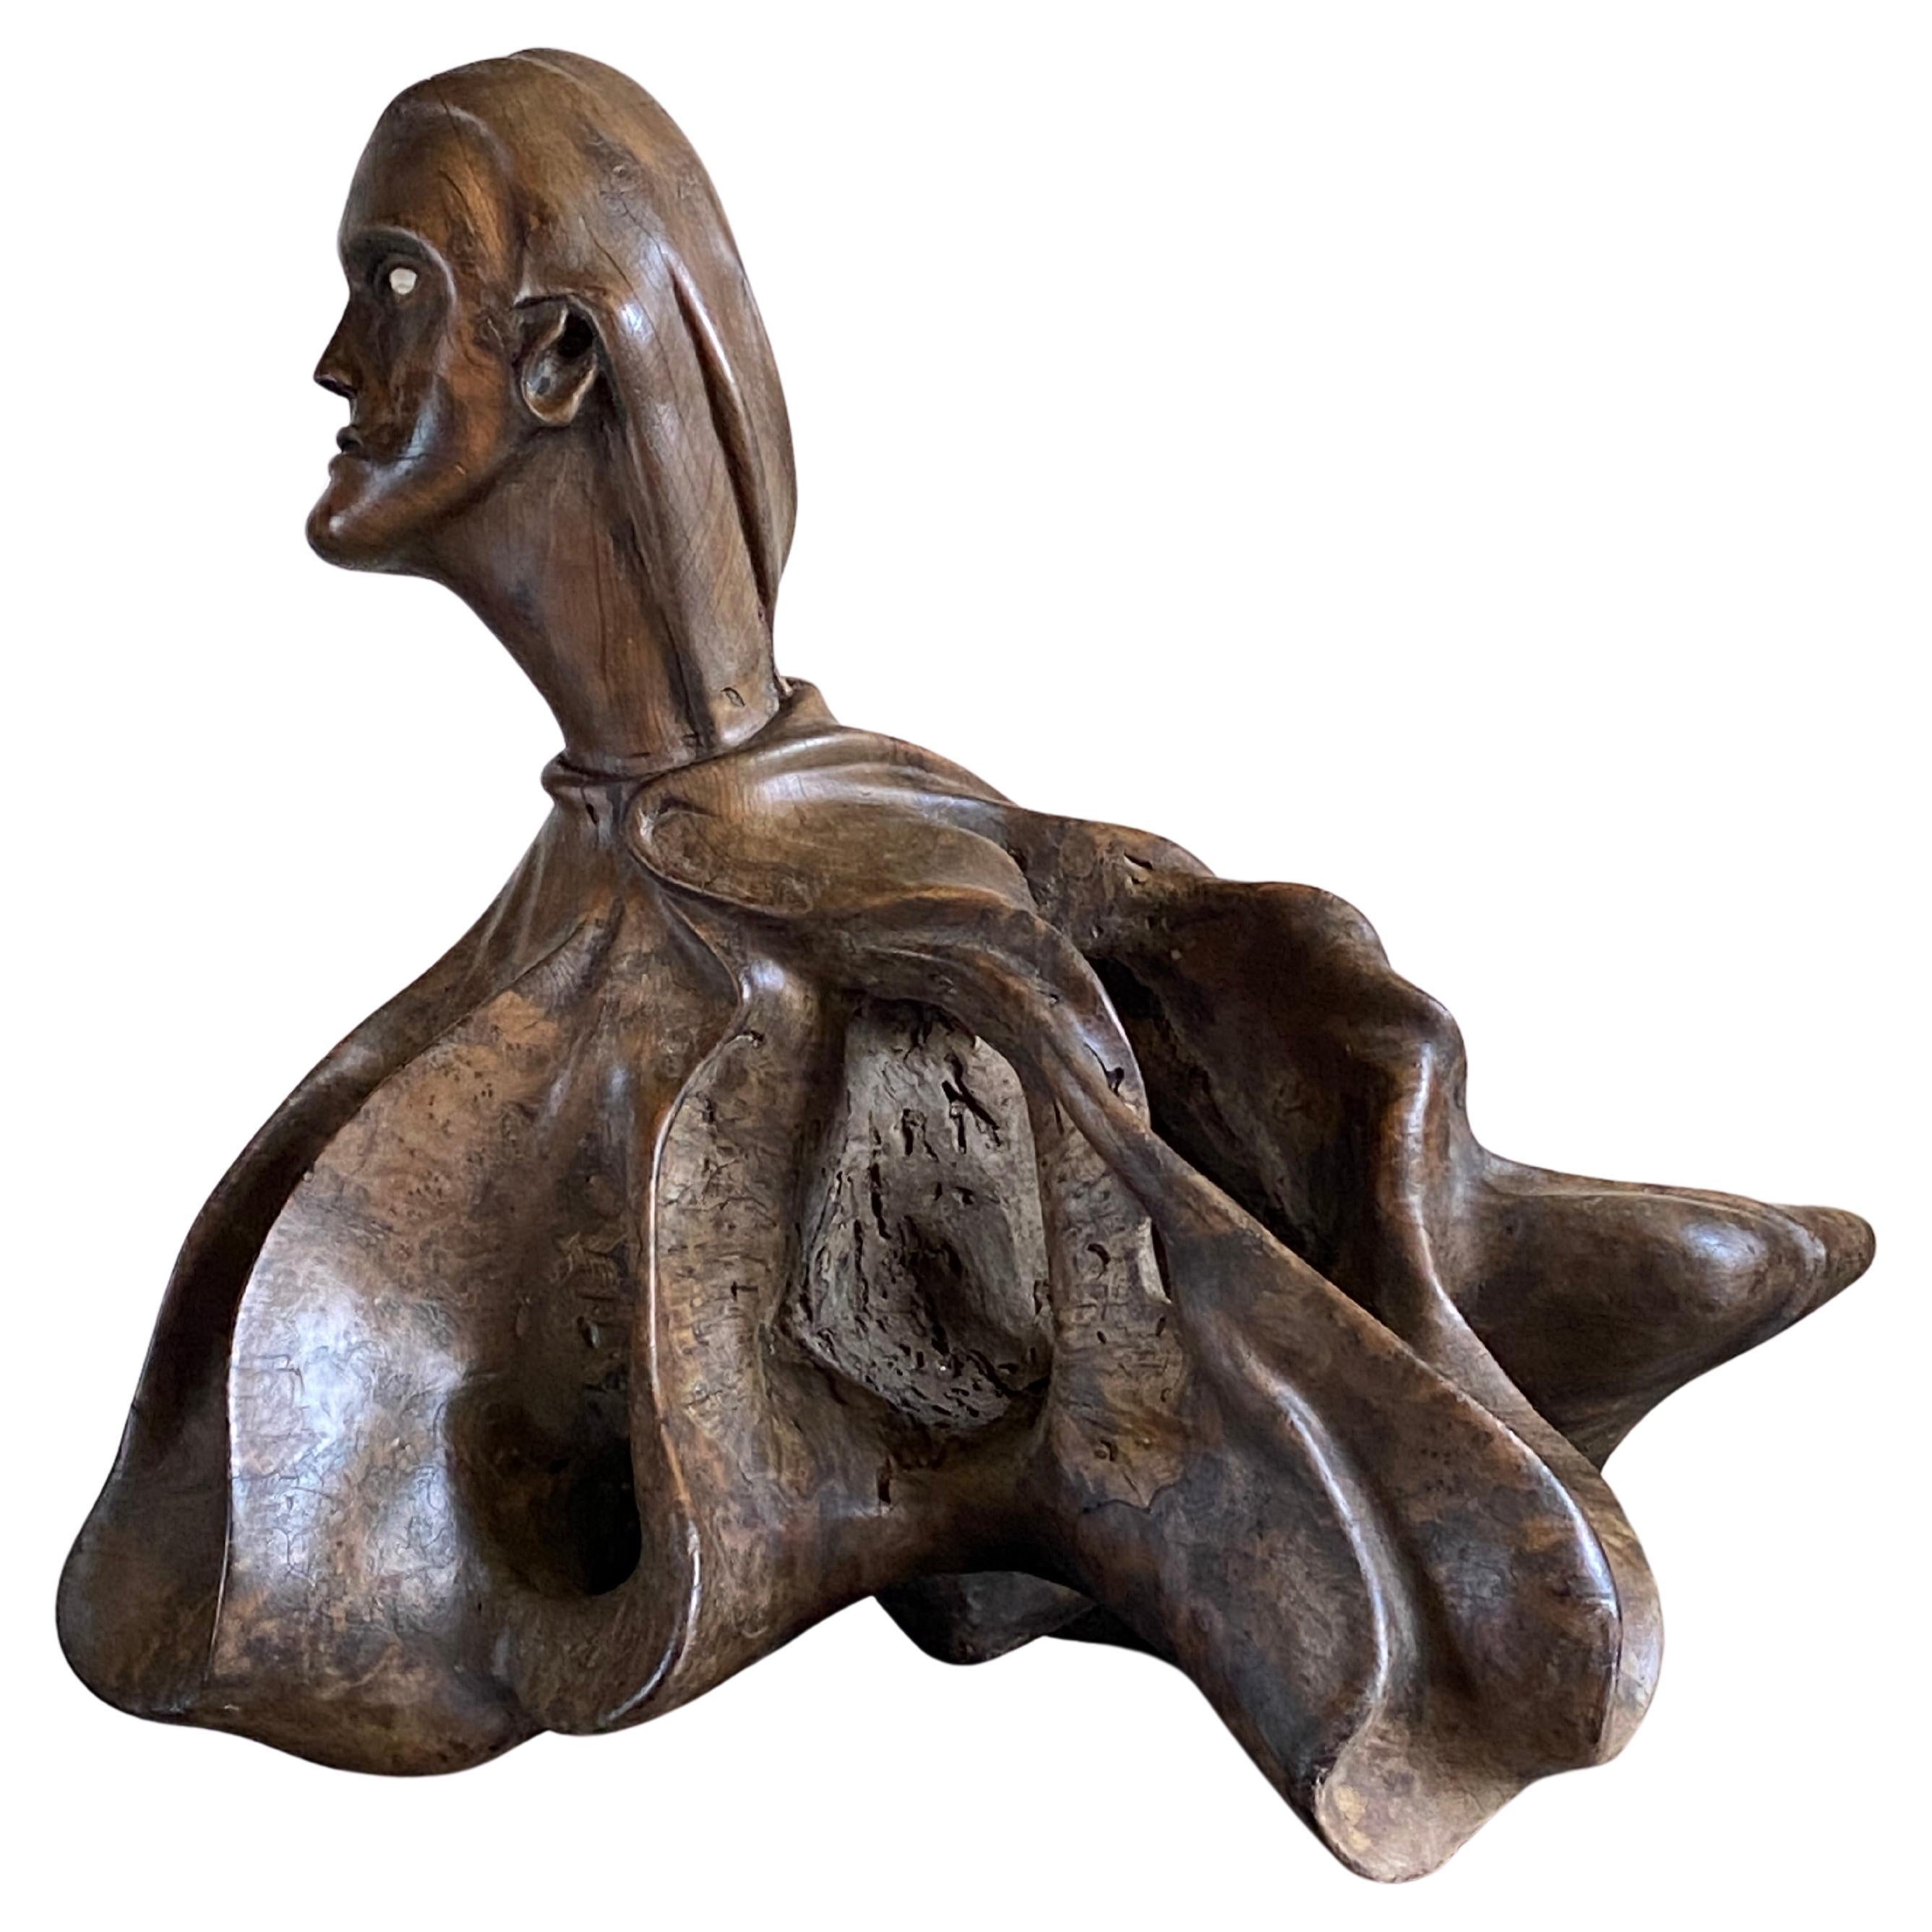 Eccezionale scultura d'arte popolare che raffigura una testa e un corpo umani vestiti con un mantello ondeggiante di forma organica con un occhio in osso.

Eccezionale patina con forti linee scolpite e fluide che producono un pezzo unico da